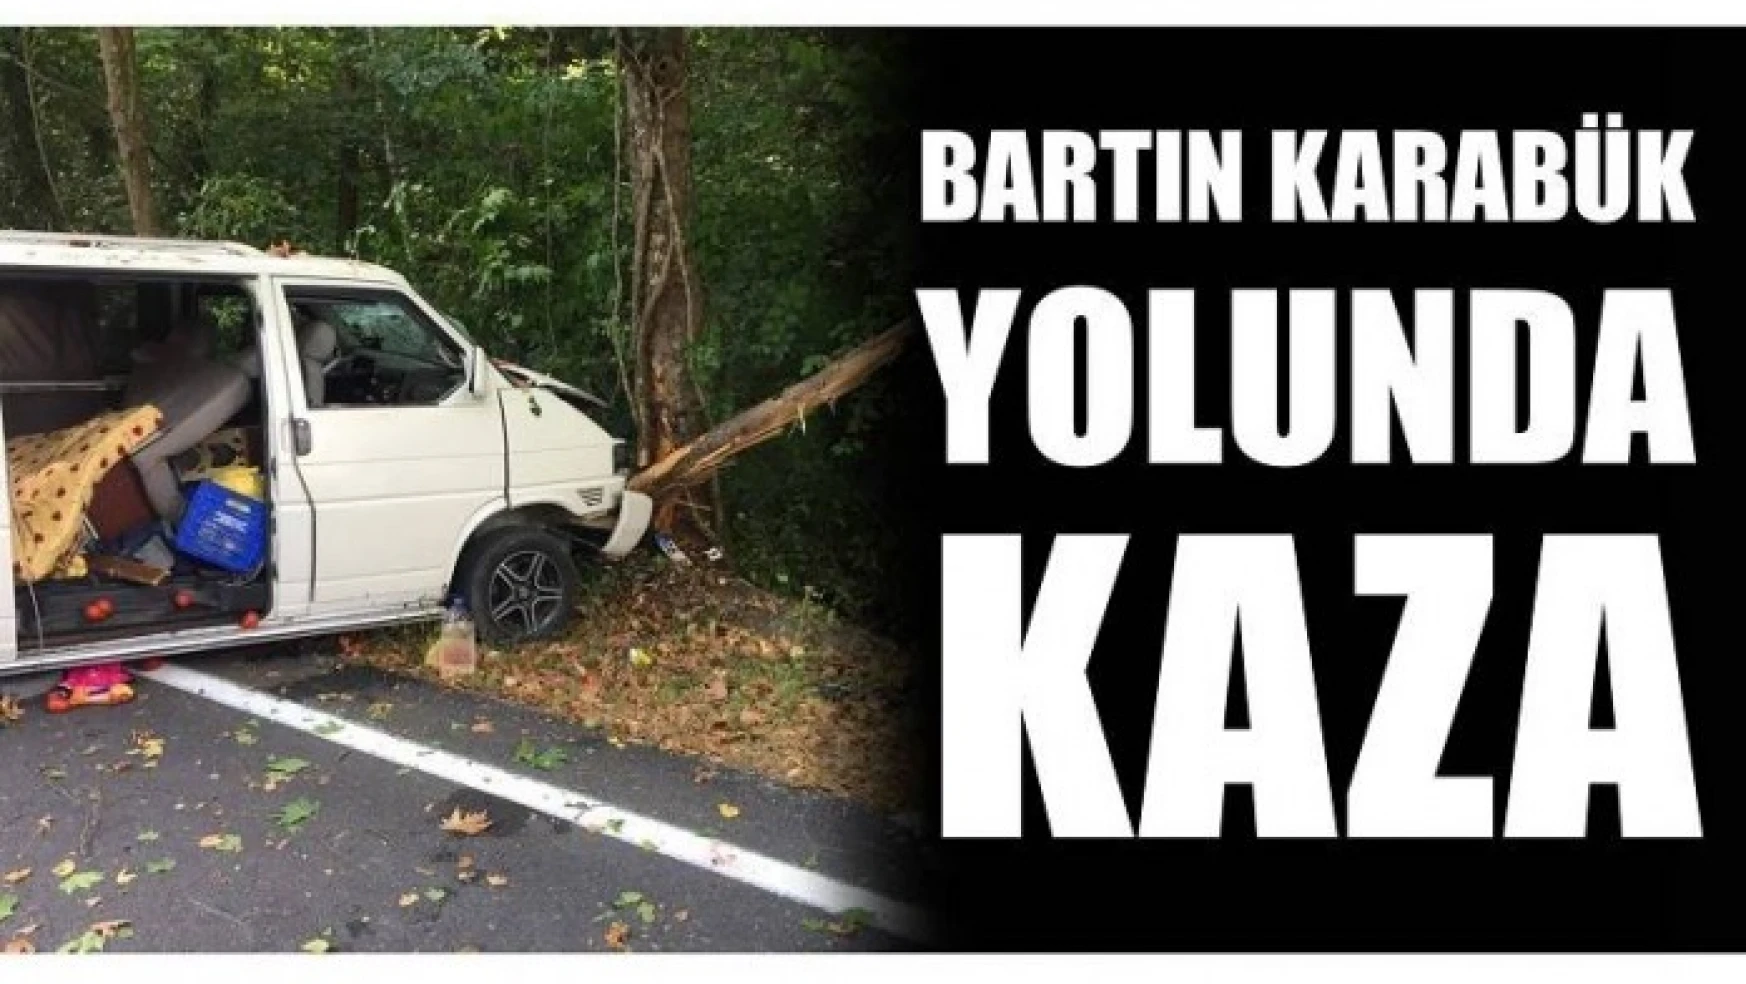 BARTIN KARABÜK YOLUNDA KAZA!